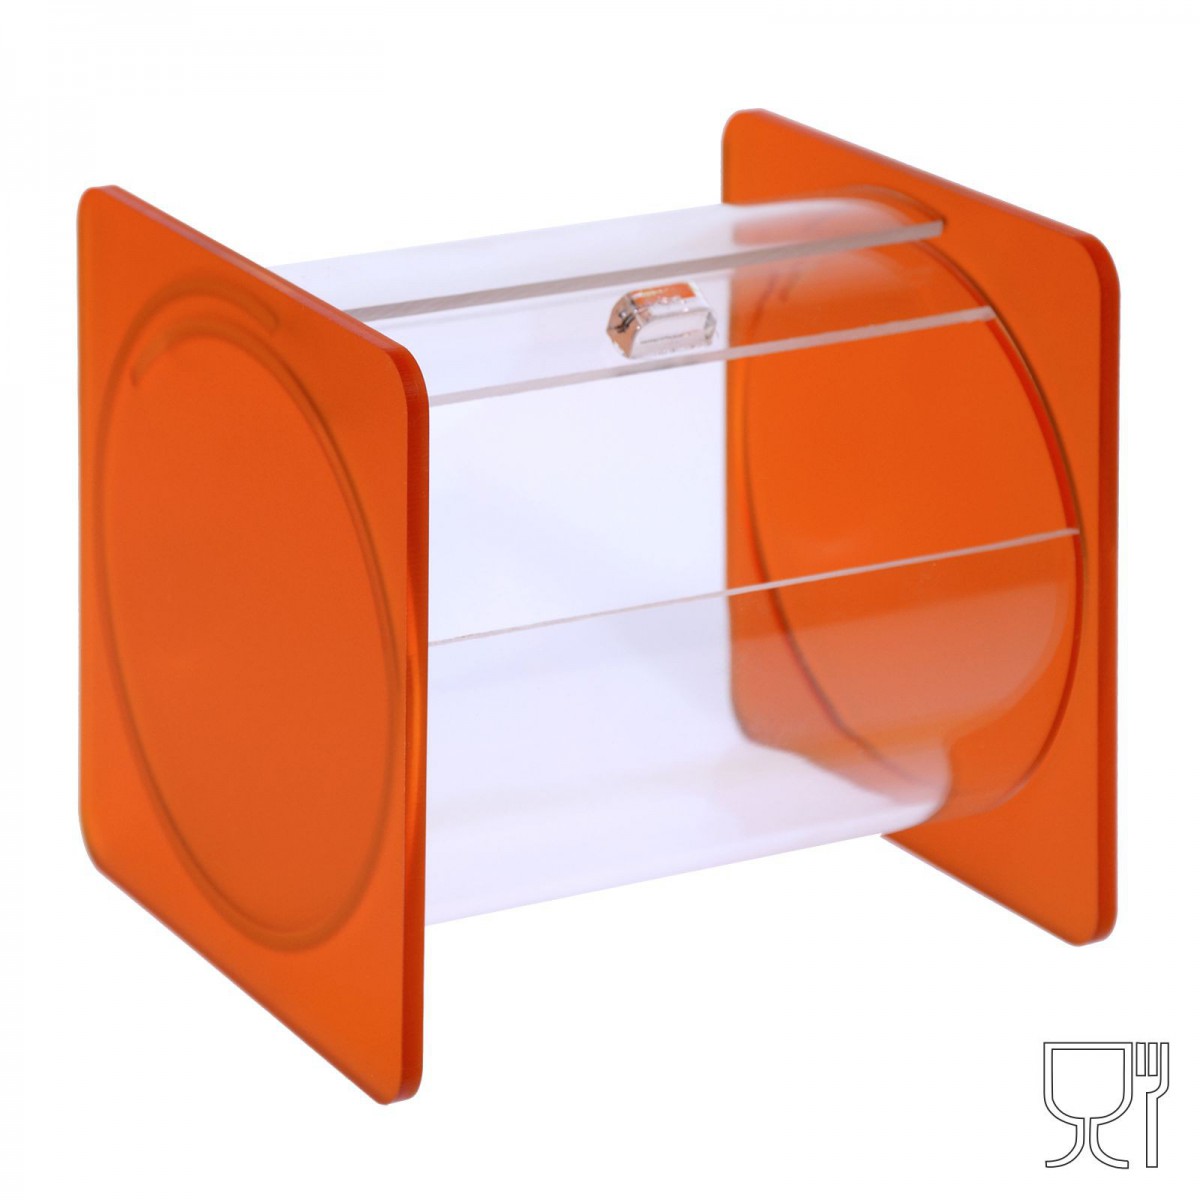 E-664 - Portacaramelle sezione circolare in plexiglass trasparente con laterali in satinato Arancione